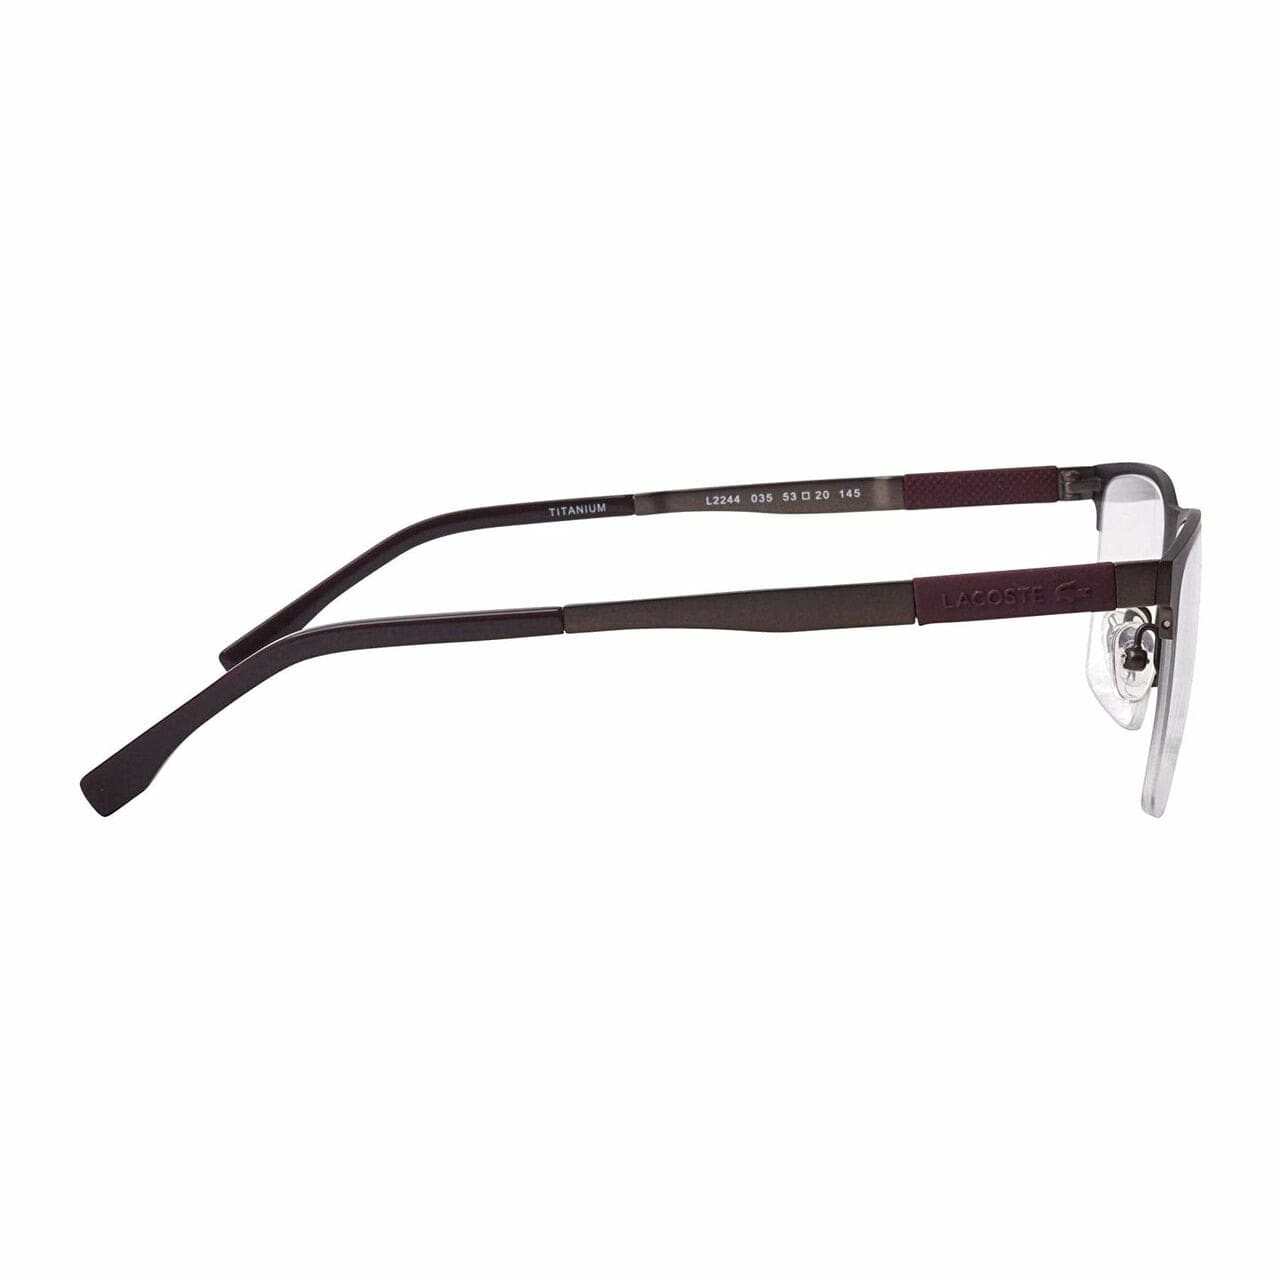 Lacoste L2244-035 Matte Dark Gunmetal Rectangular Men's Titamium Eyeglasses 886895363617